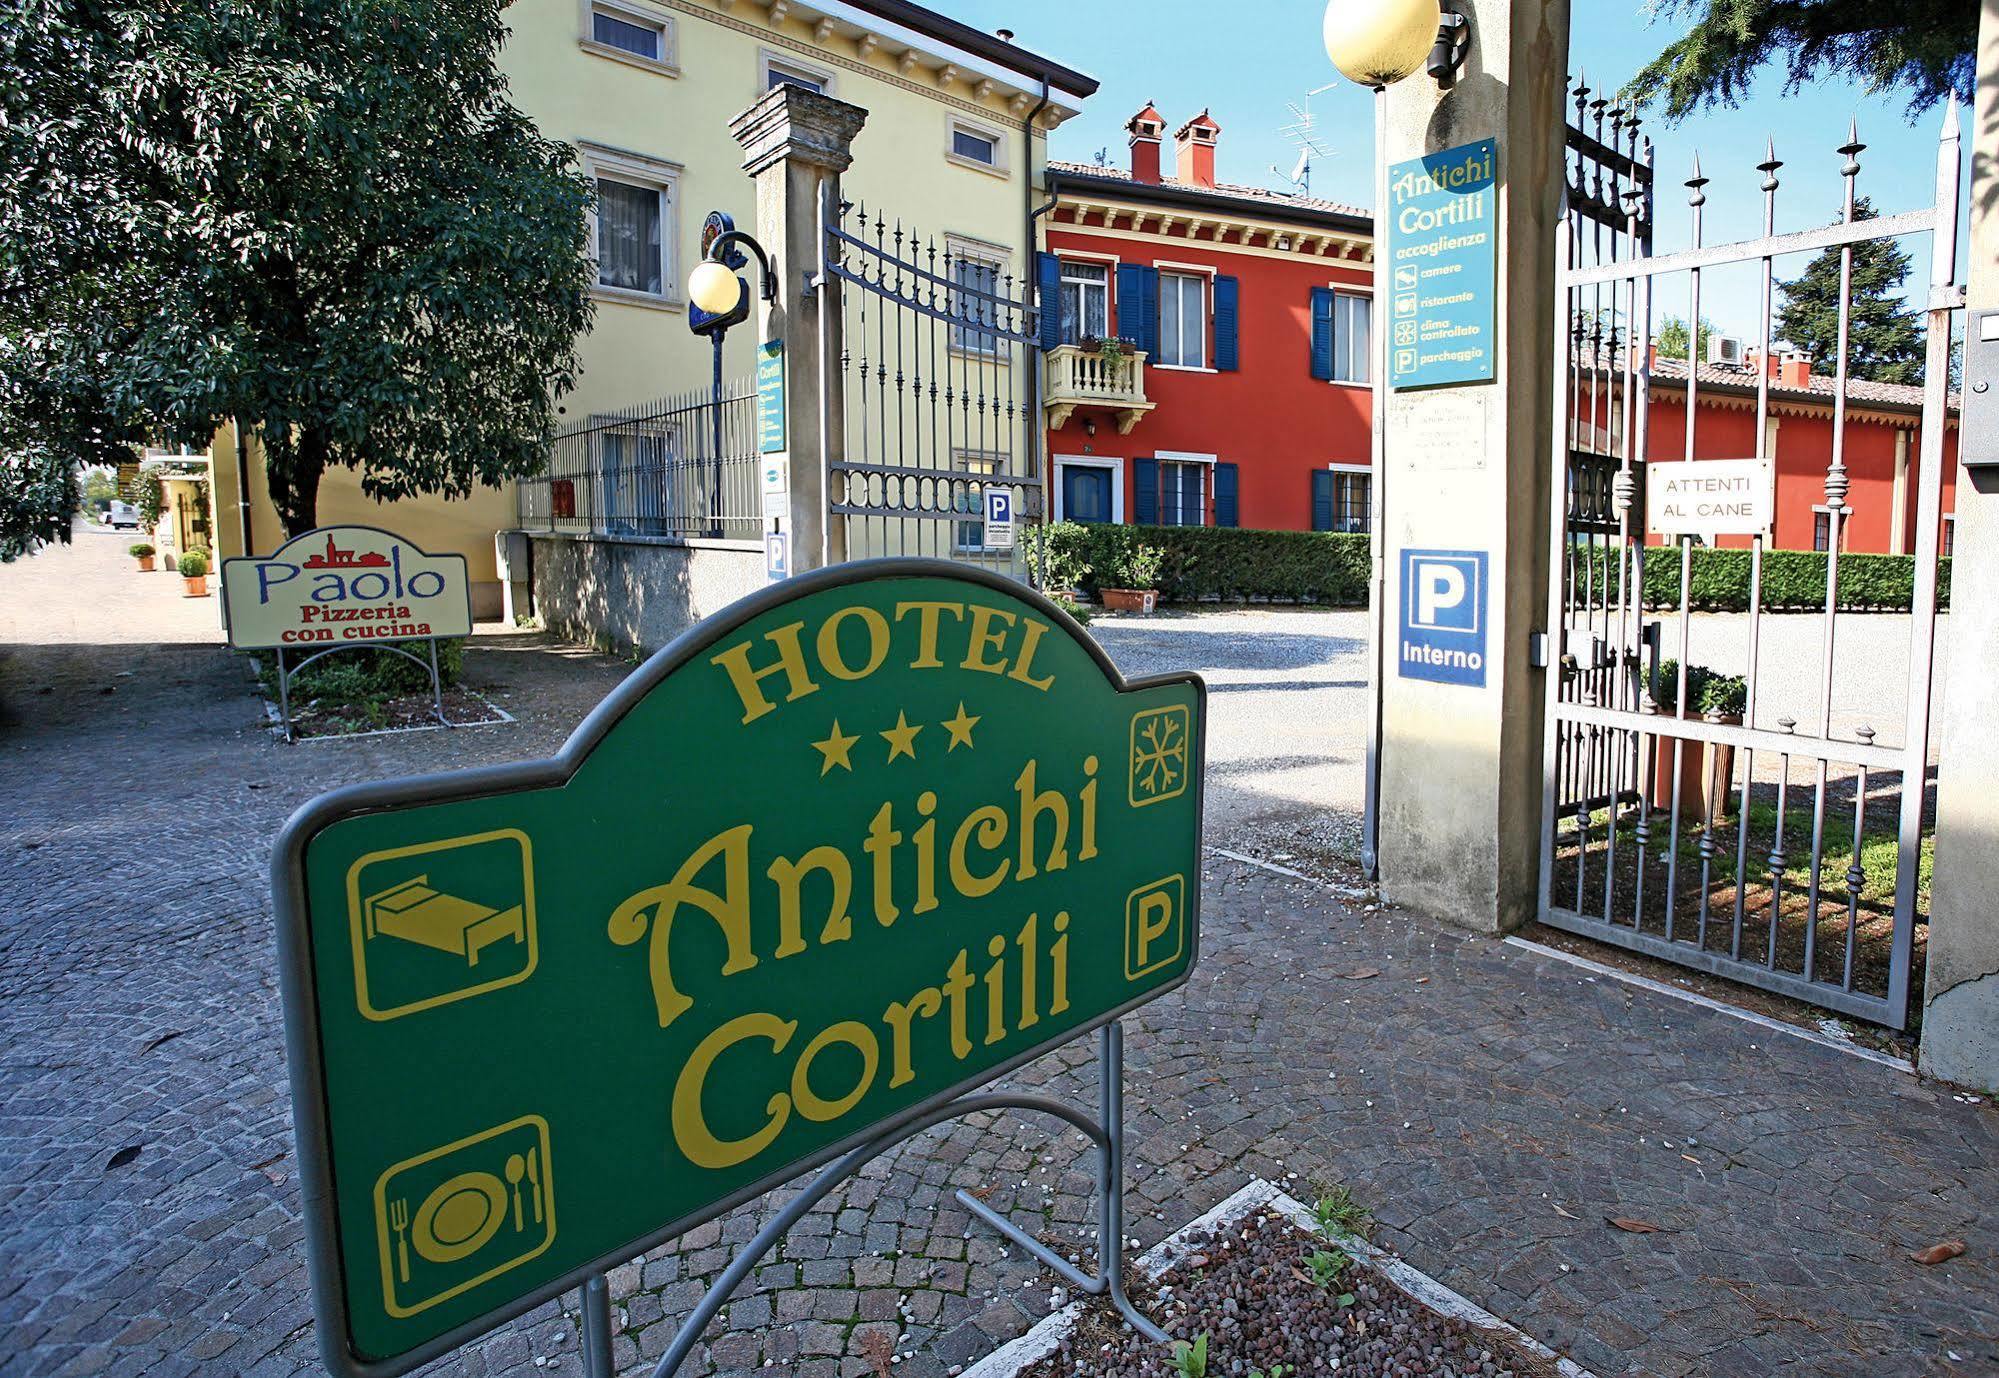 Hotel Antichi Cortili Dossobuono Εξωτερικό φωτογραφία